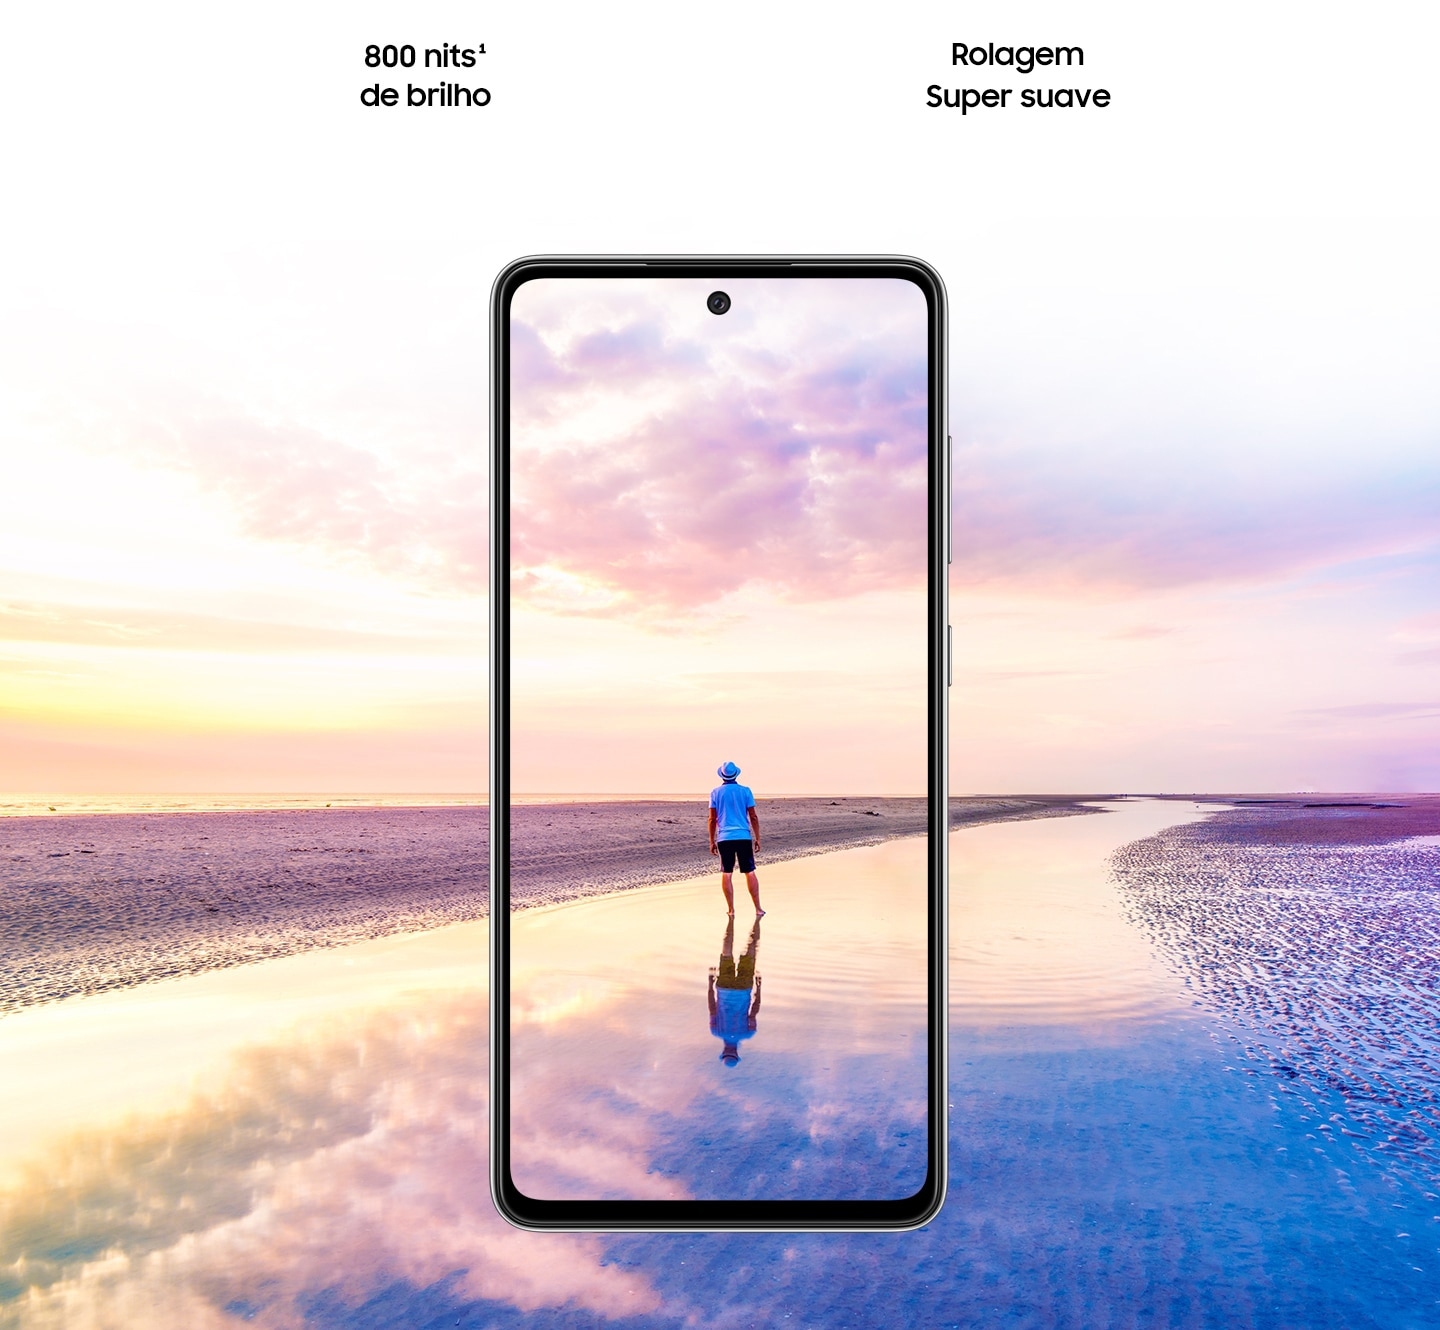 Vista frontal do Galaxy A52. Uma cena de um homem em pé em uma praia ao pôr do sol com cores rosa e azul no céu se expande para fora do display. O texto diz 800 nits de brilho, Eye Comfort Shield, com o logotipo da SGS e do Real Smooth.